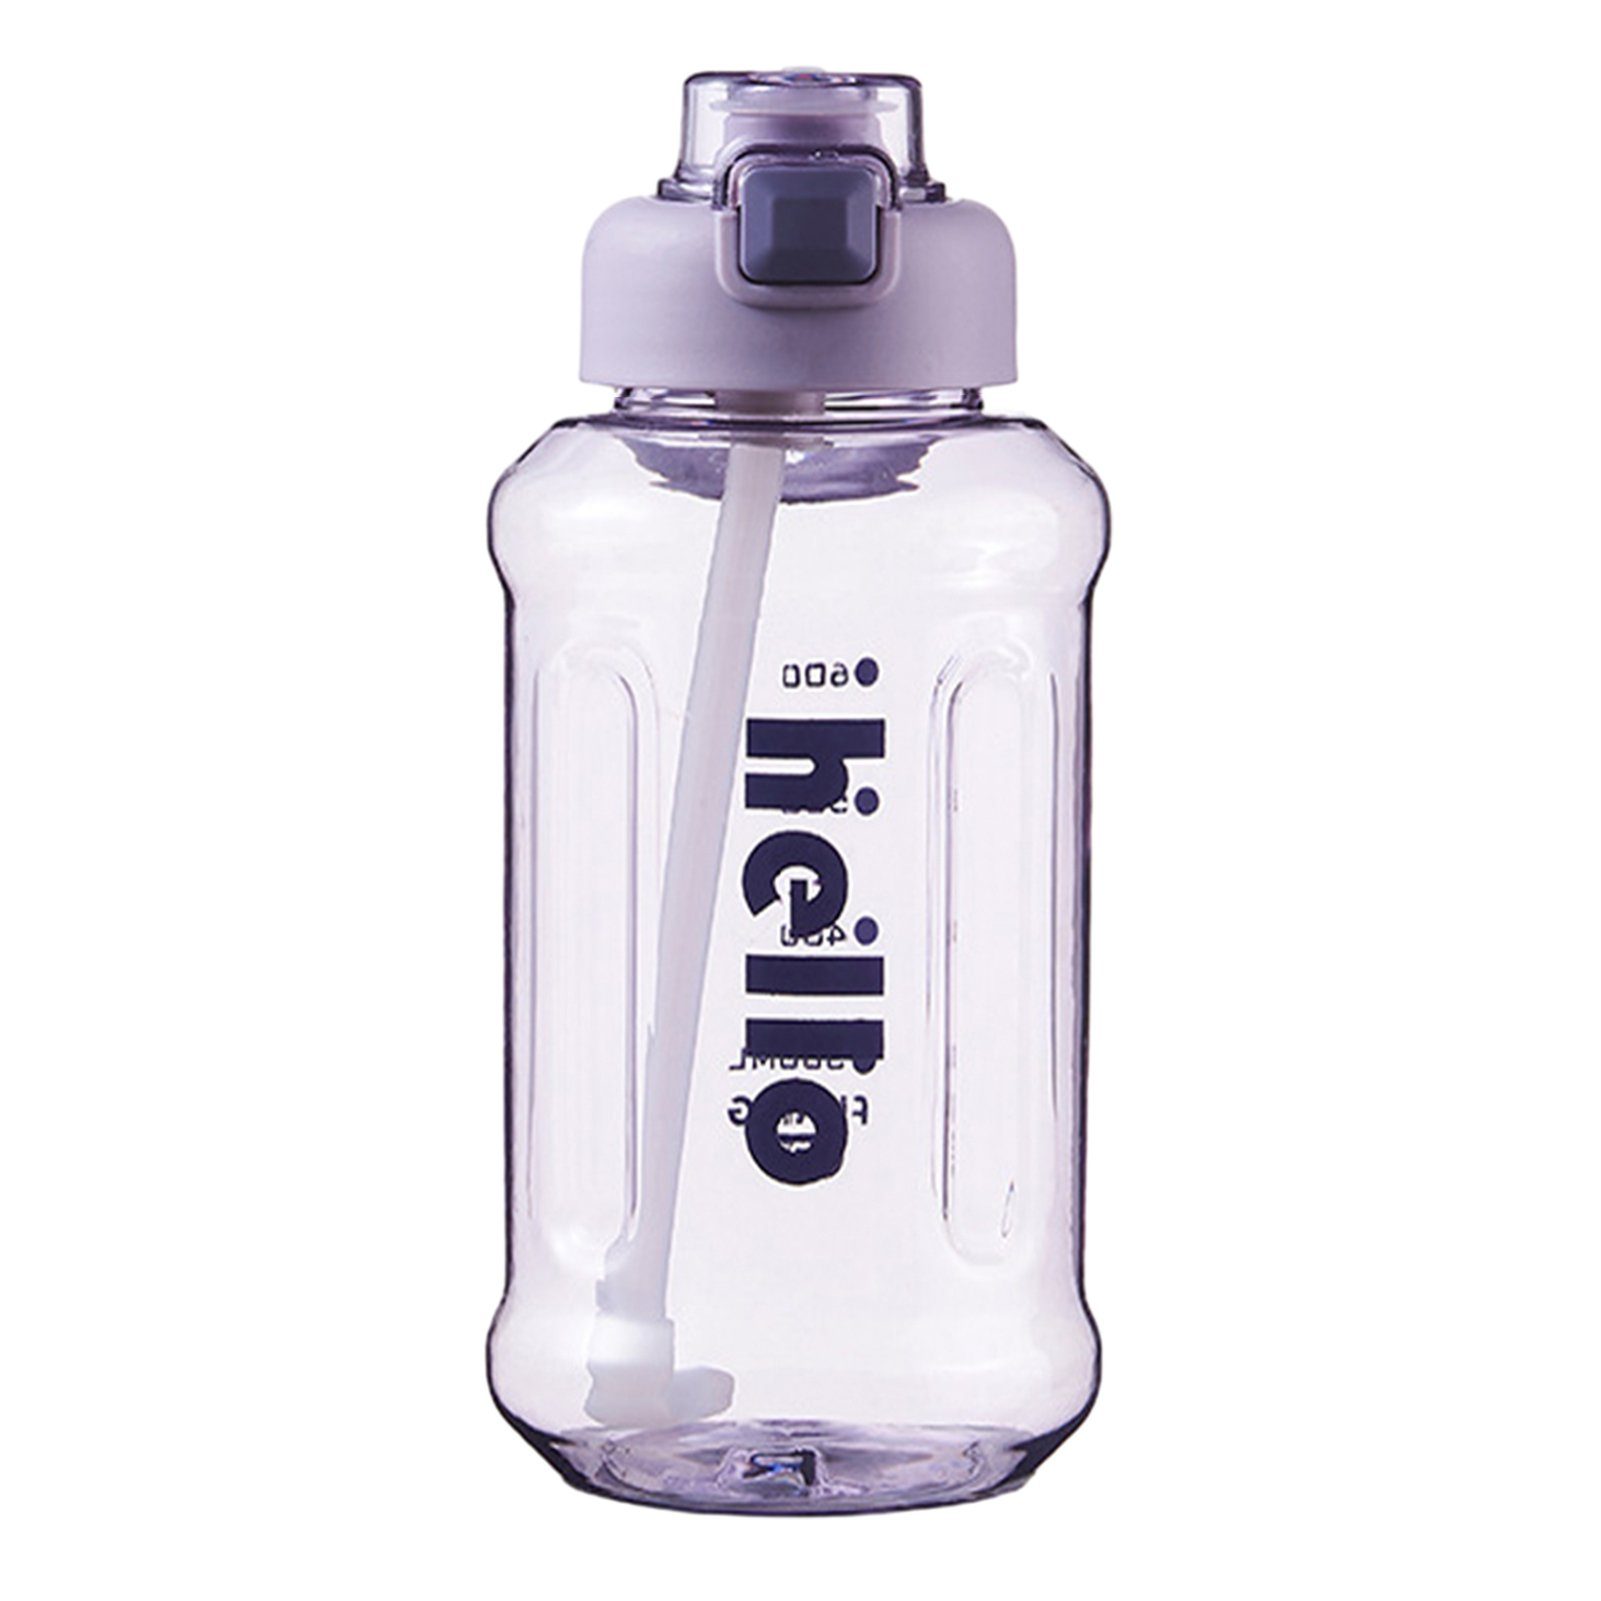 Blusmart Trinkflasche Tragbarer Stroh-Wasserbecher Mit Griff, Hoher Kapazität, Versiegelter, Trinkflasche purple 1000ml